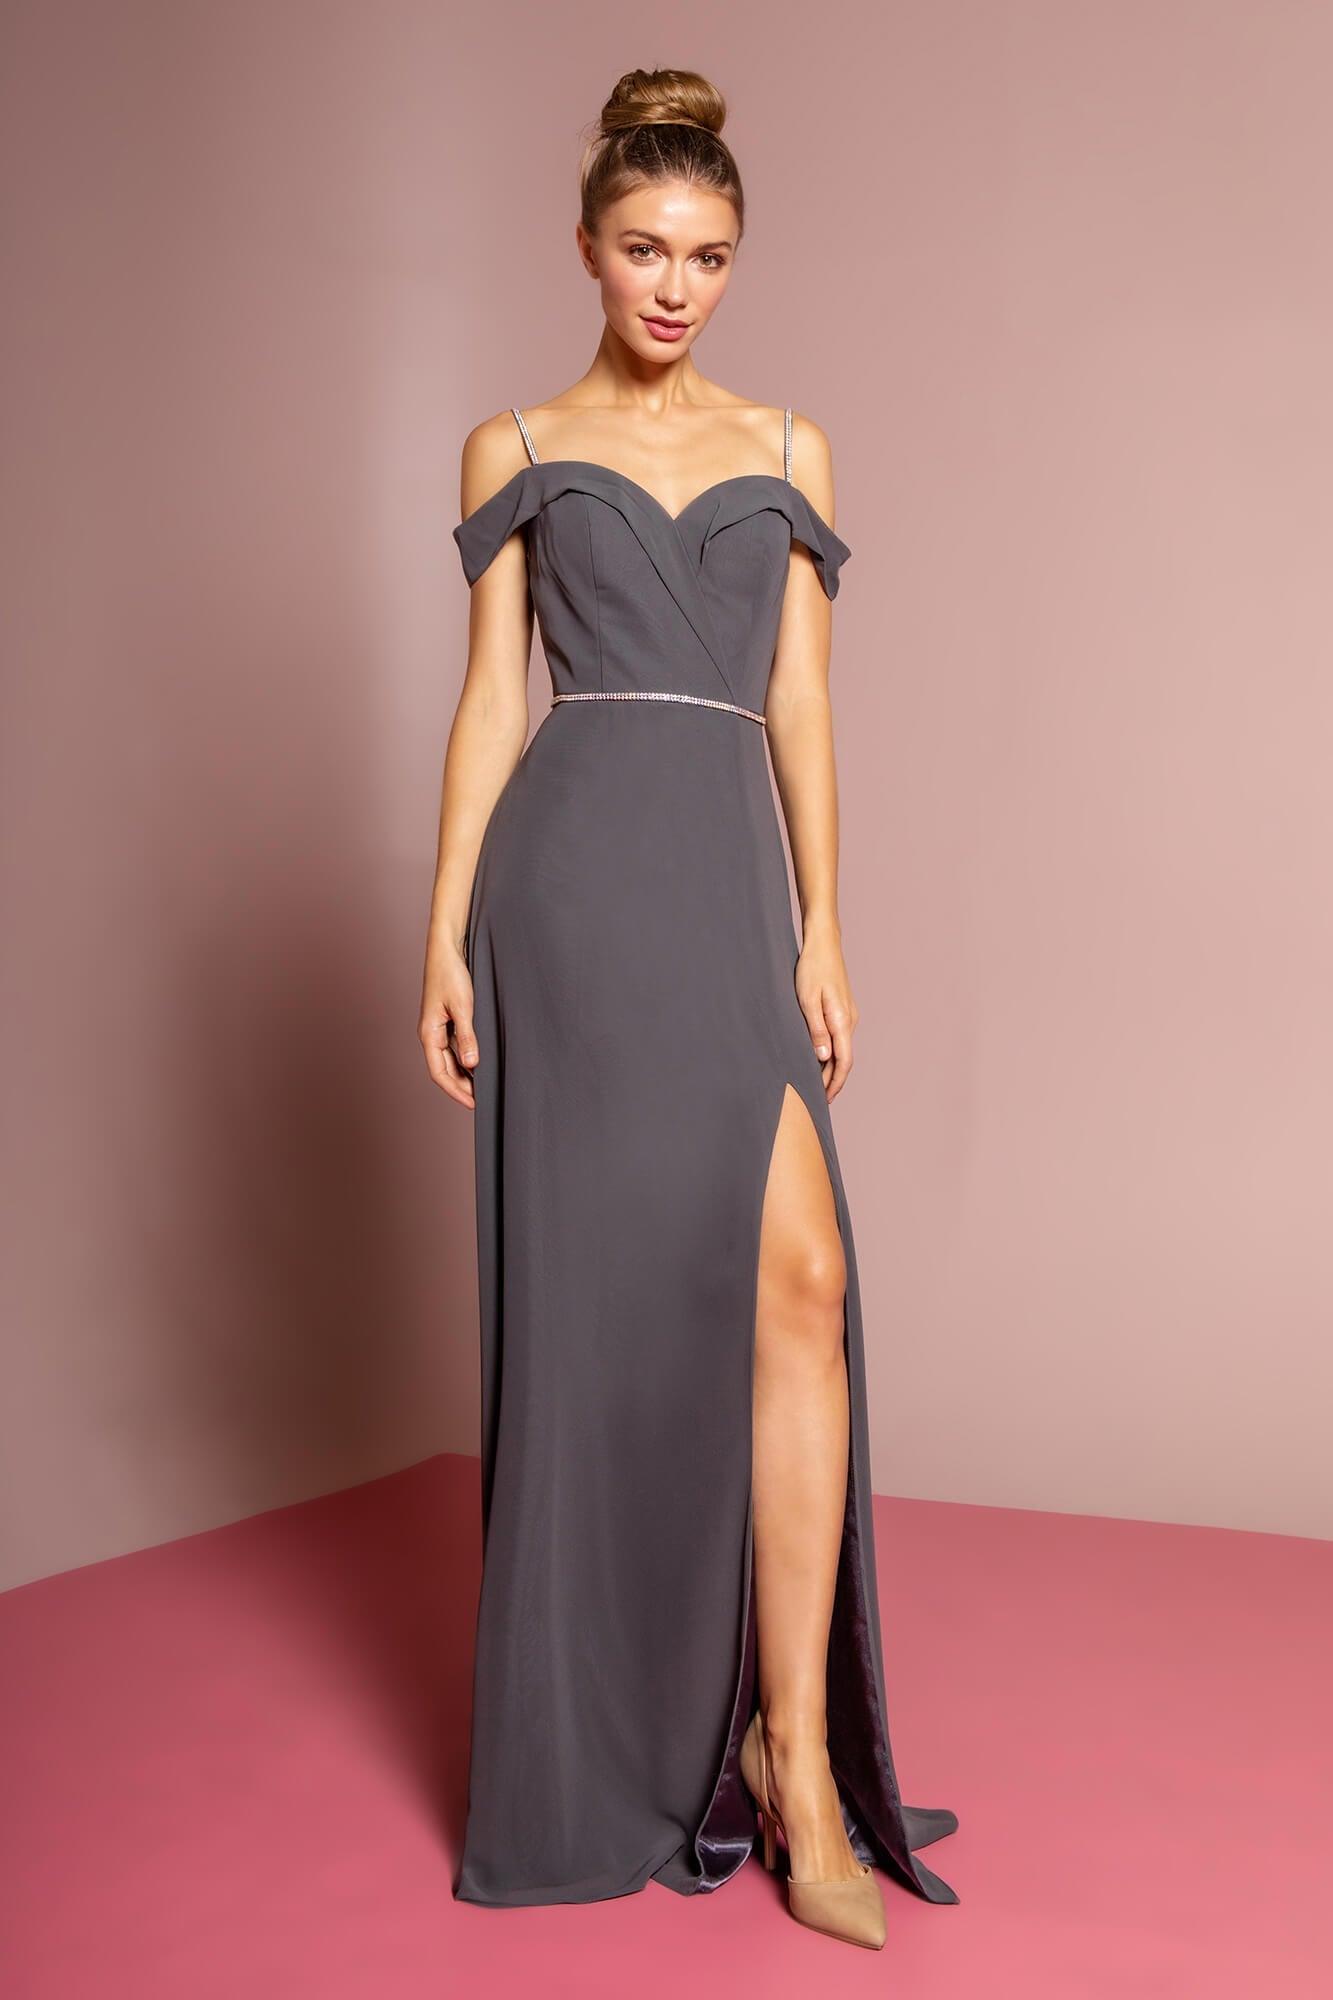 Off-Shoulder Long Formal Dress Bridesmaid - The Dress Outlet Elizabeth K